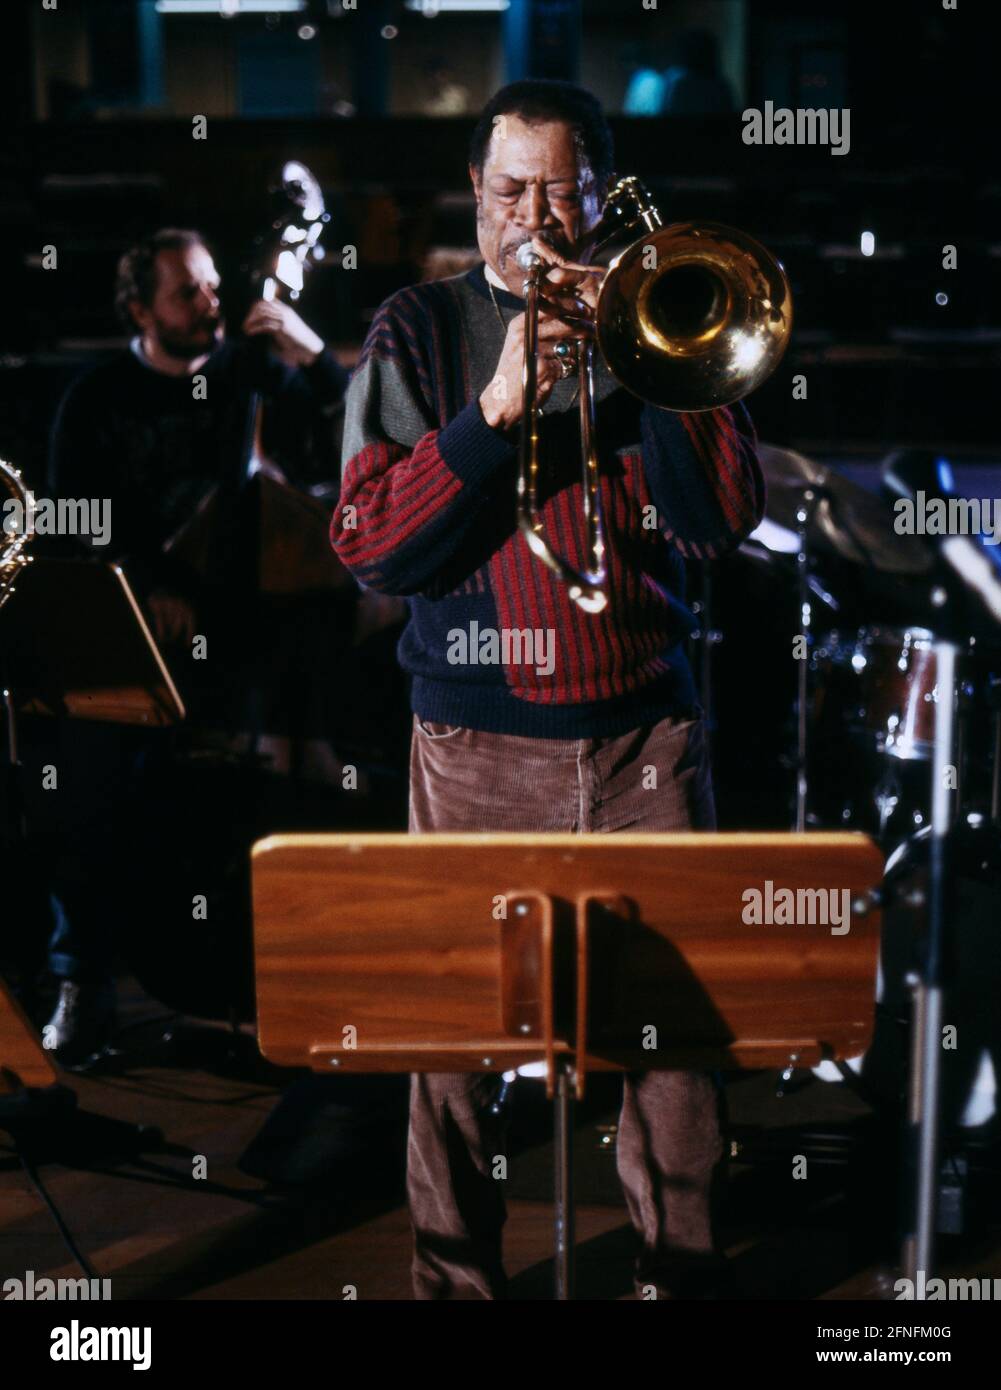 Al Grey, Amerikanischer Jazzposaunist, bei einem Auftritt, 1986. Al Grey, trombonista jazz americano, durante un'esibizione, nel 1986. Foto Stock